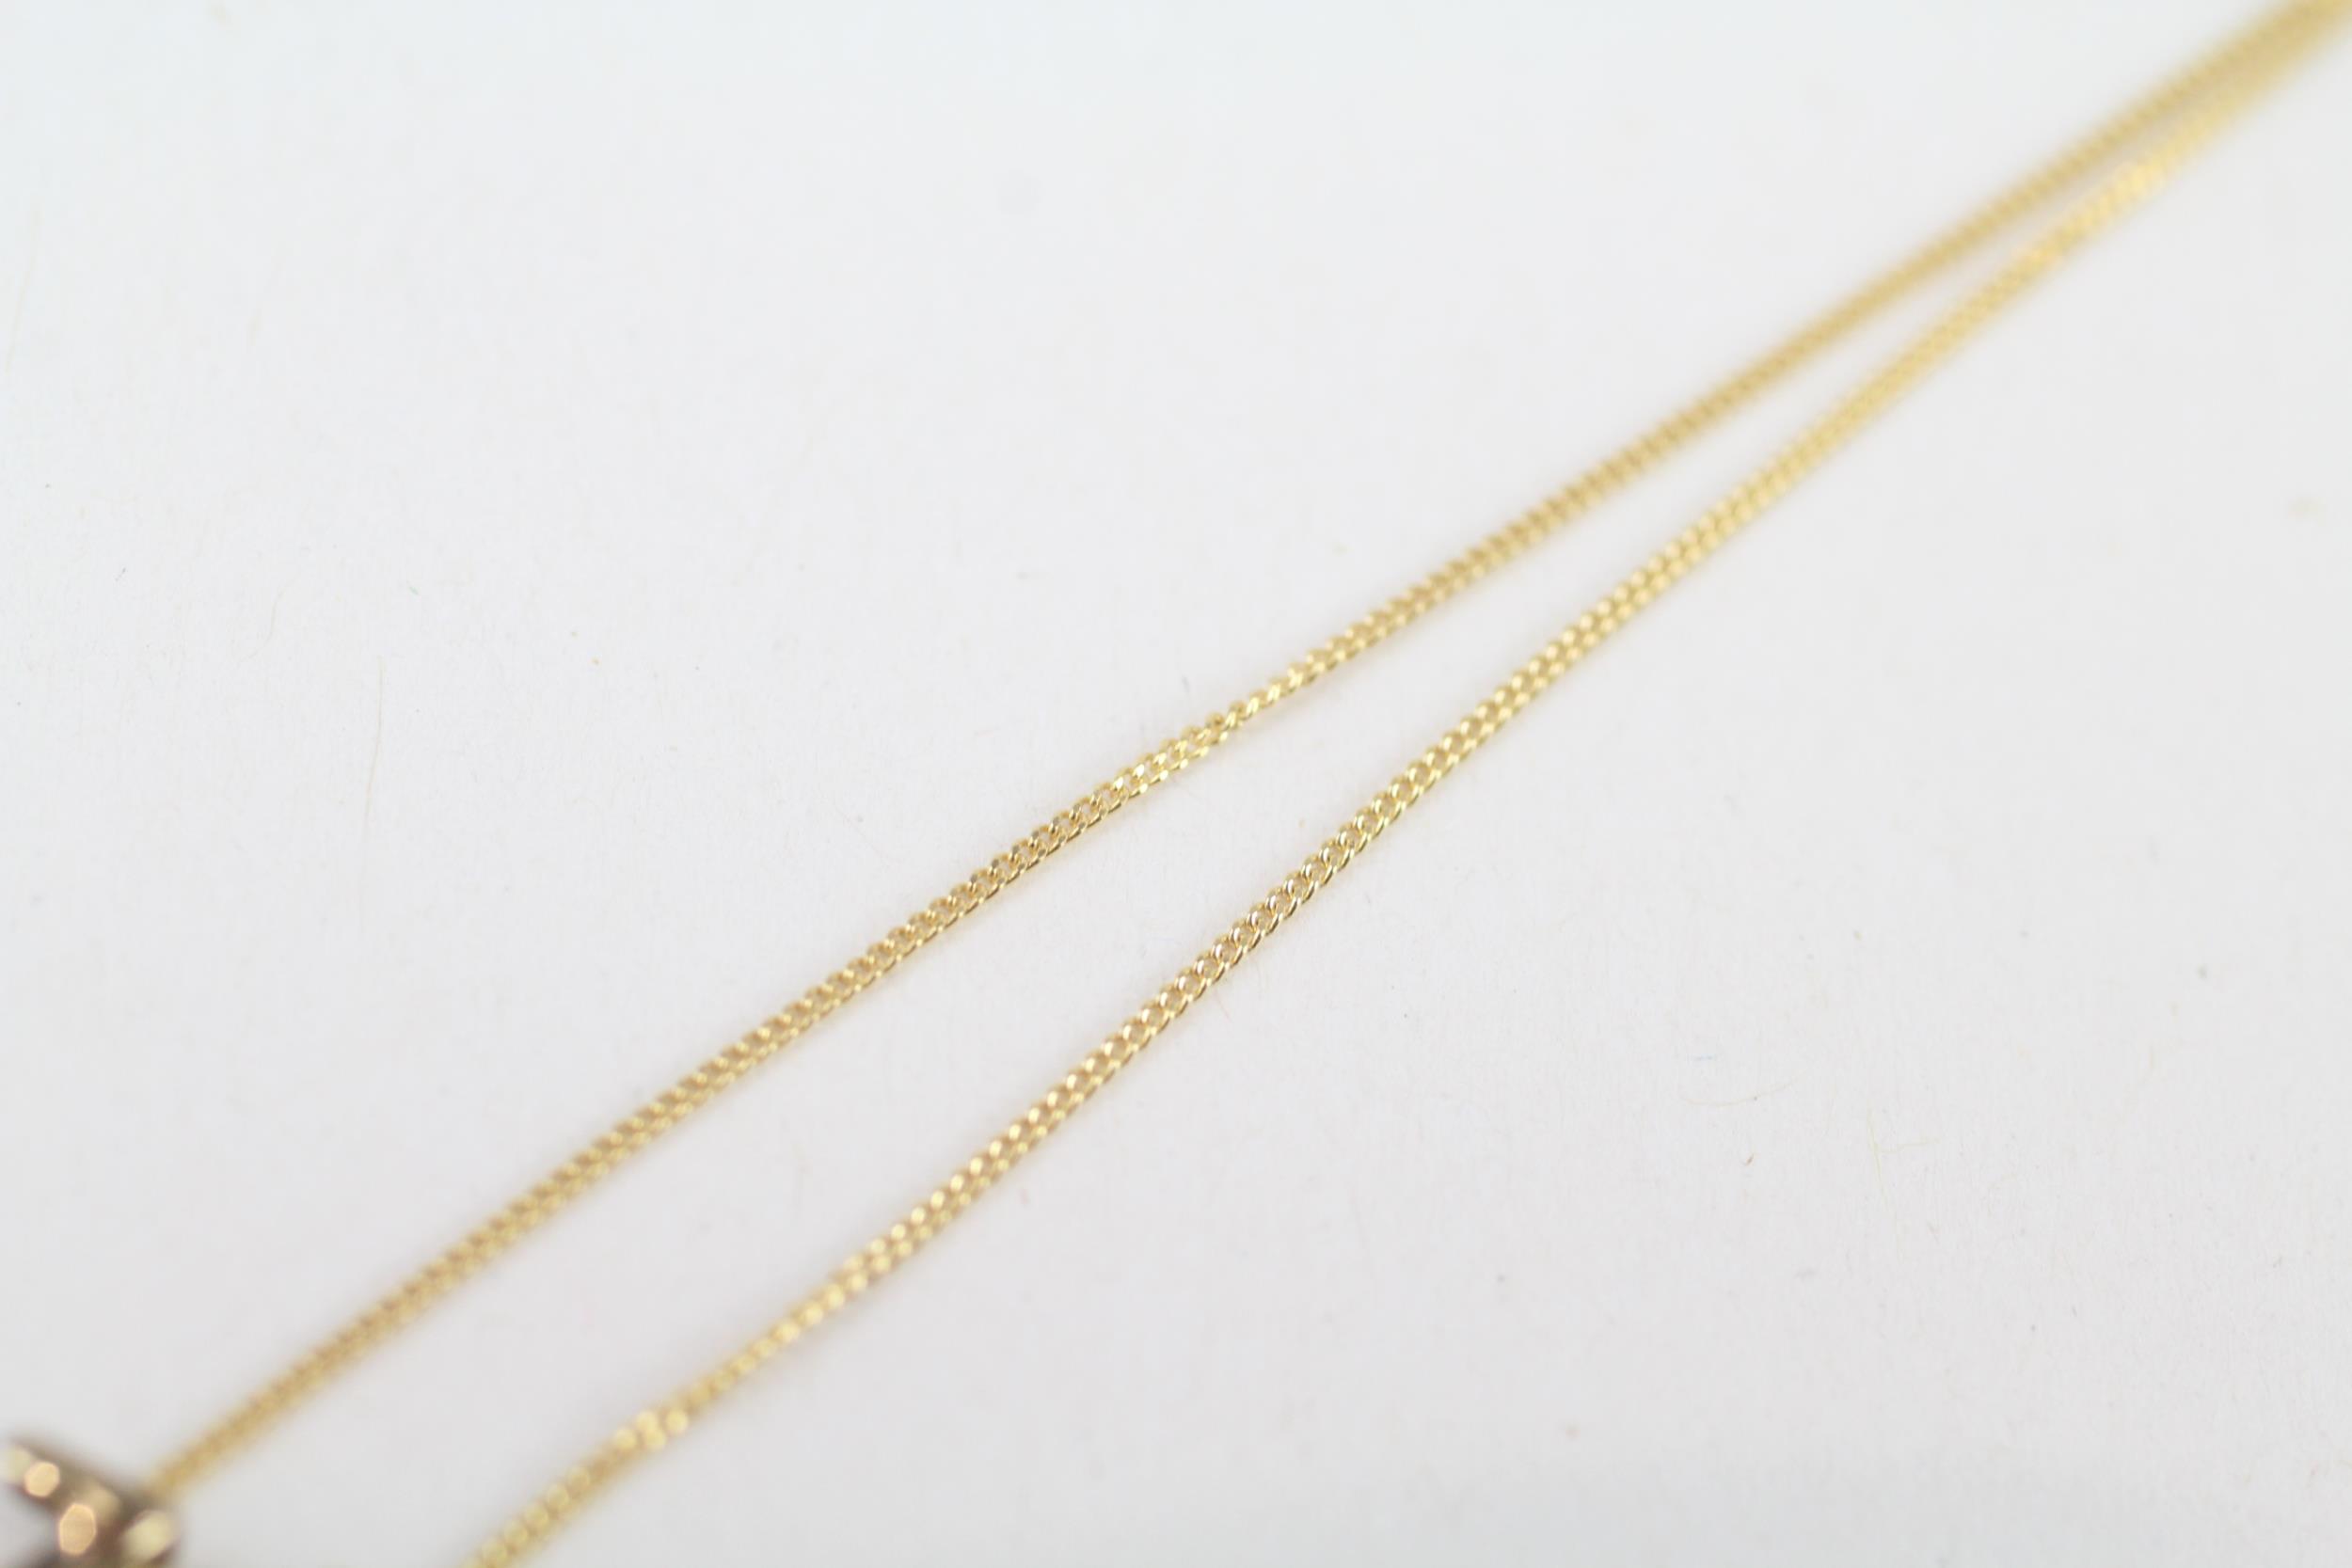 9ct gold diamond horseshoe pendant necklace 1.6 g - Image 3 of 4